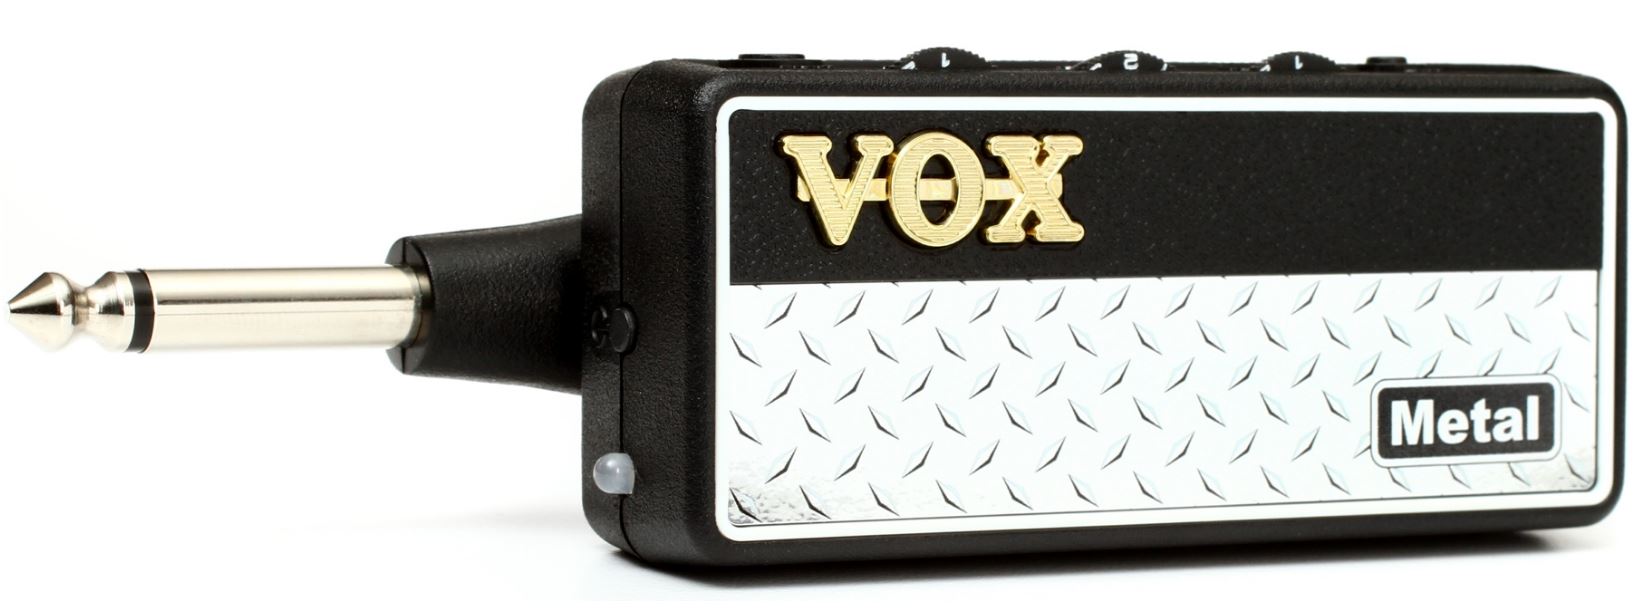 Vox Amplug Metal Mini Headphone Amp